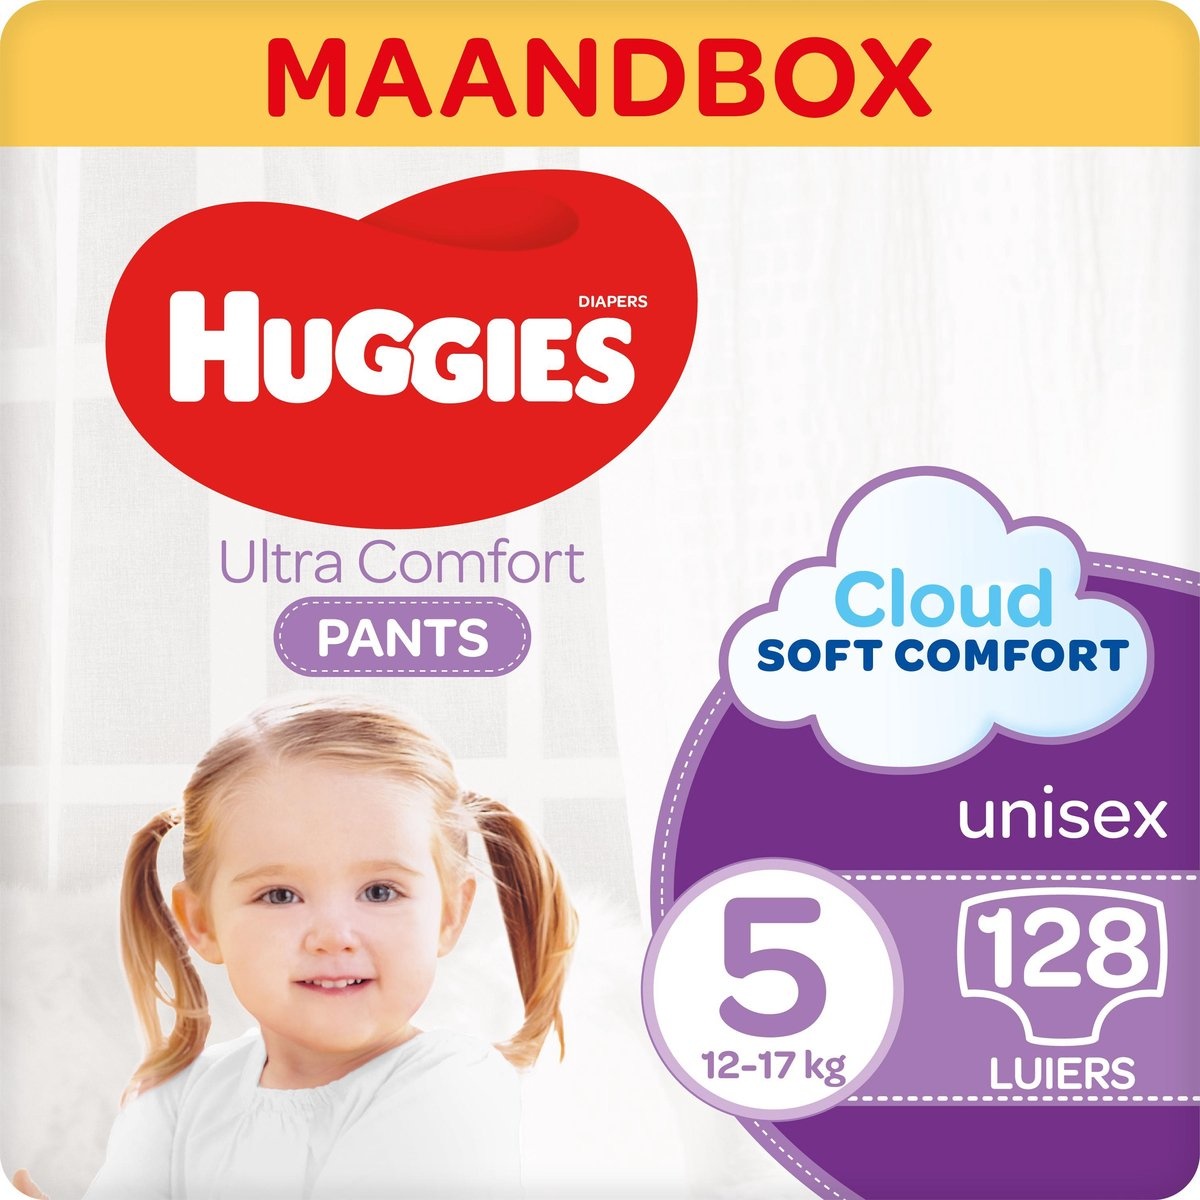 Huggies Ultra Comfort Diaper Pants - taille 5 (12 à 17 kg) - 128 pièces - Boîte mensuelle - Emballage endommagé